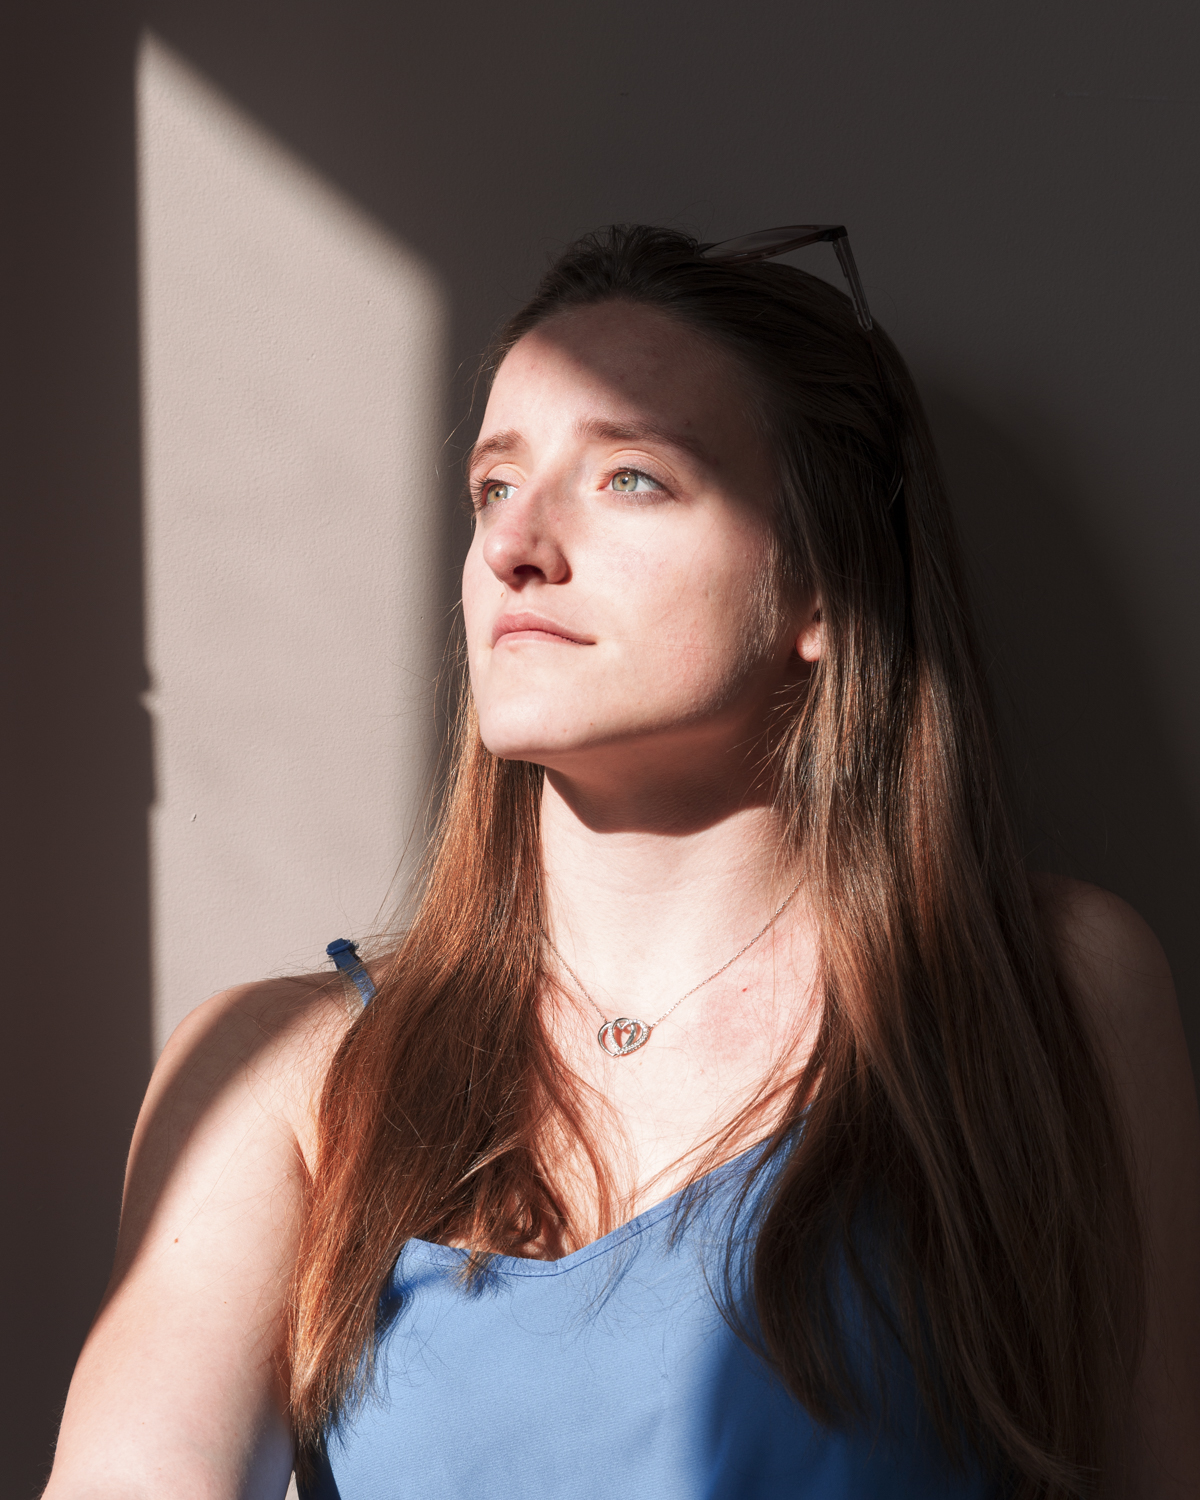 Photographie couleur de Cécile Reiter qui dirige son regard vers l'extérieur ensoleillé pendant le confinement